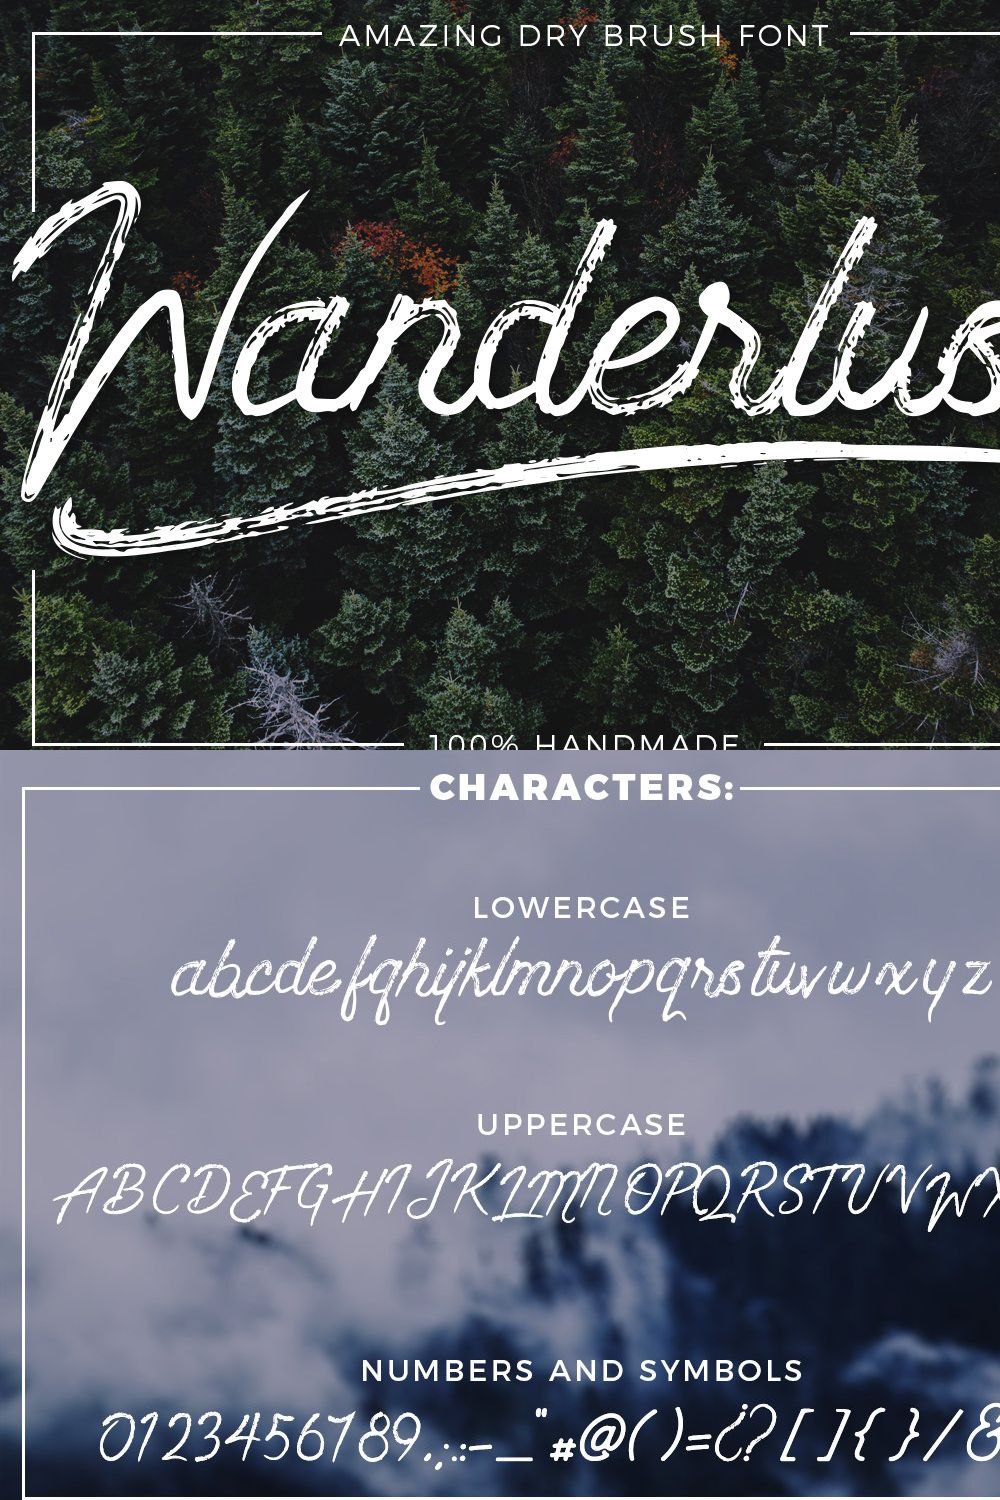 Wanderlust - Dry brush font pinterest preview image.